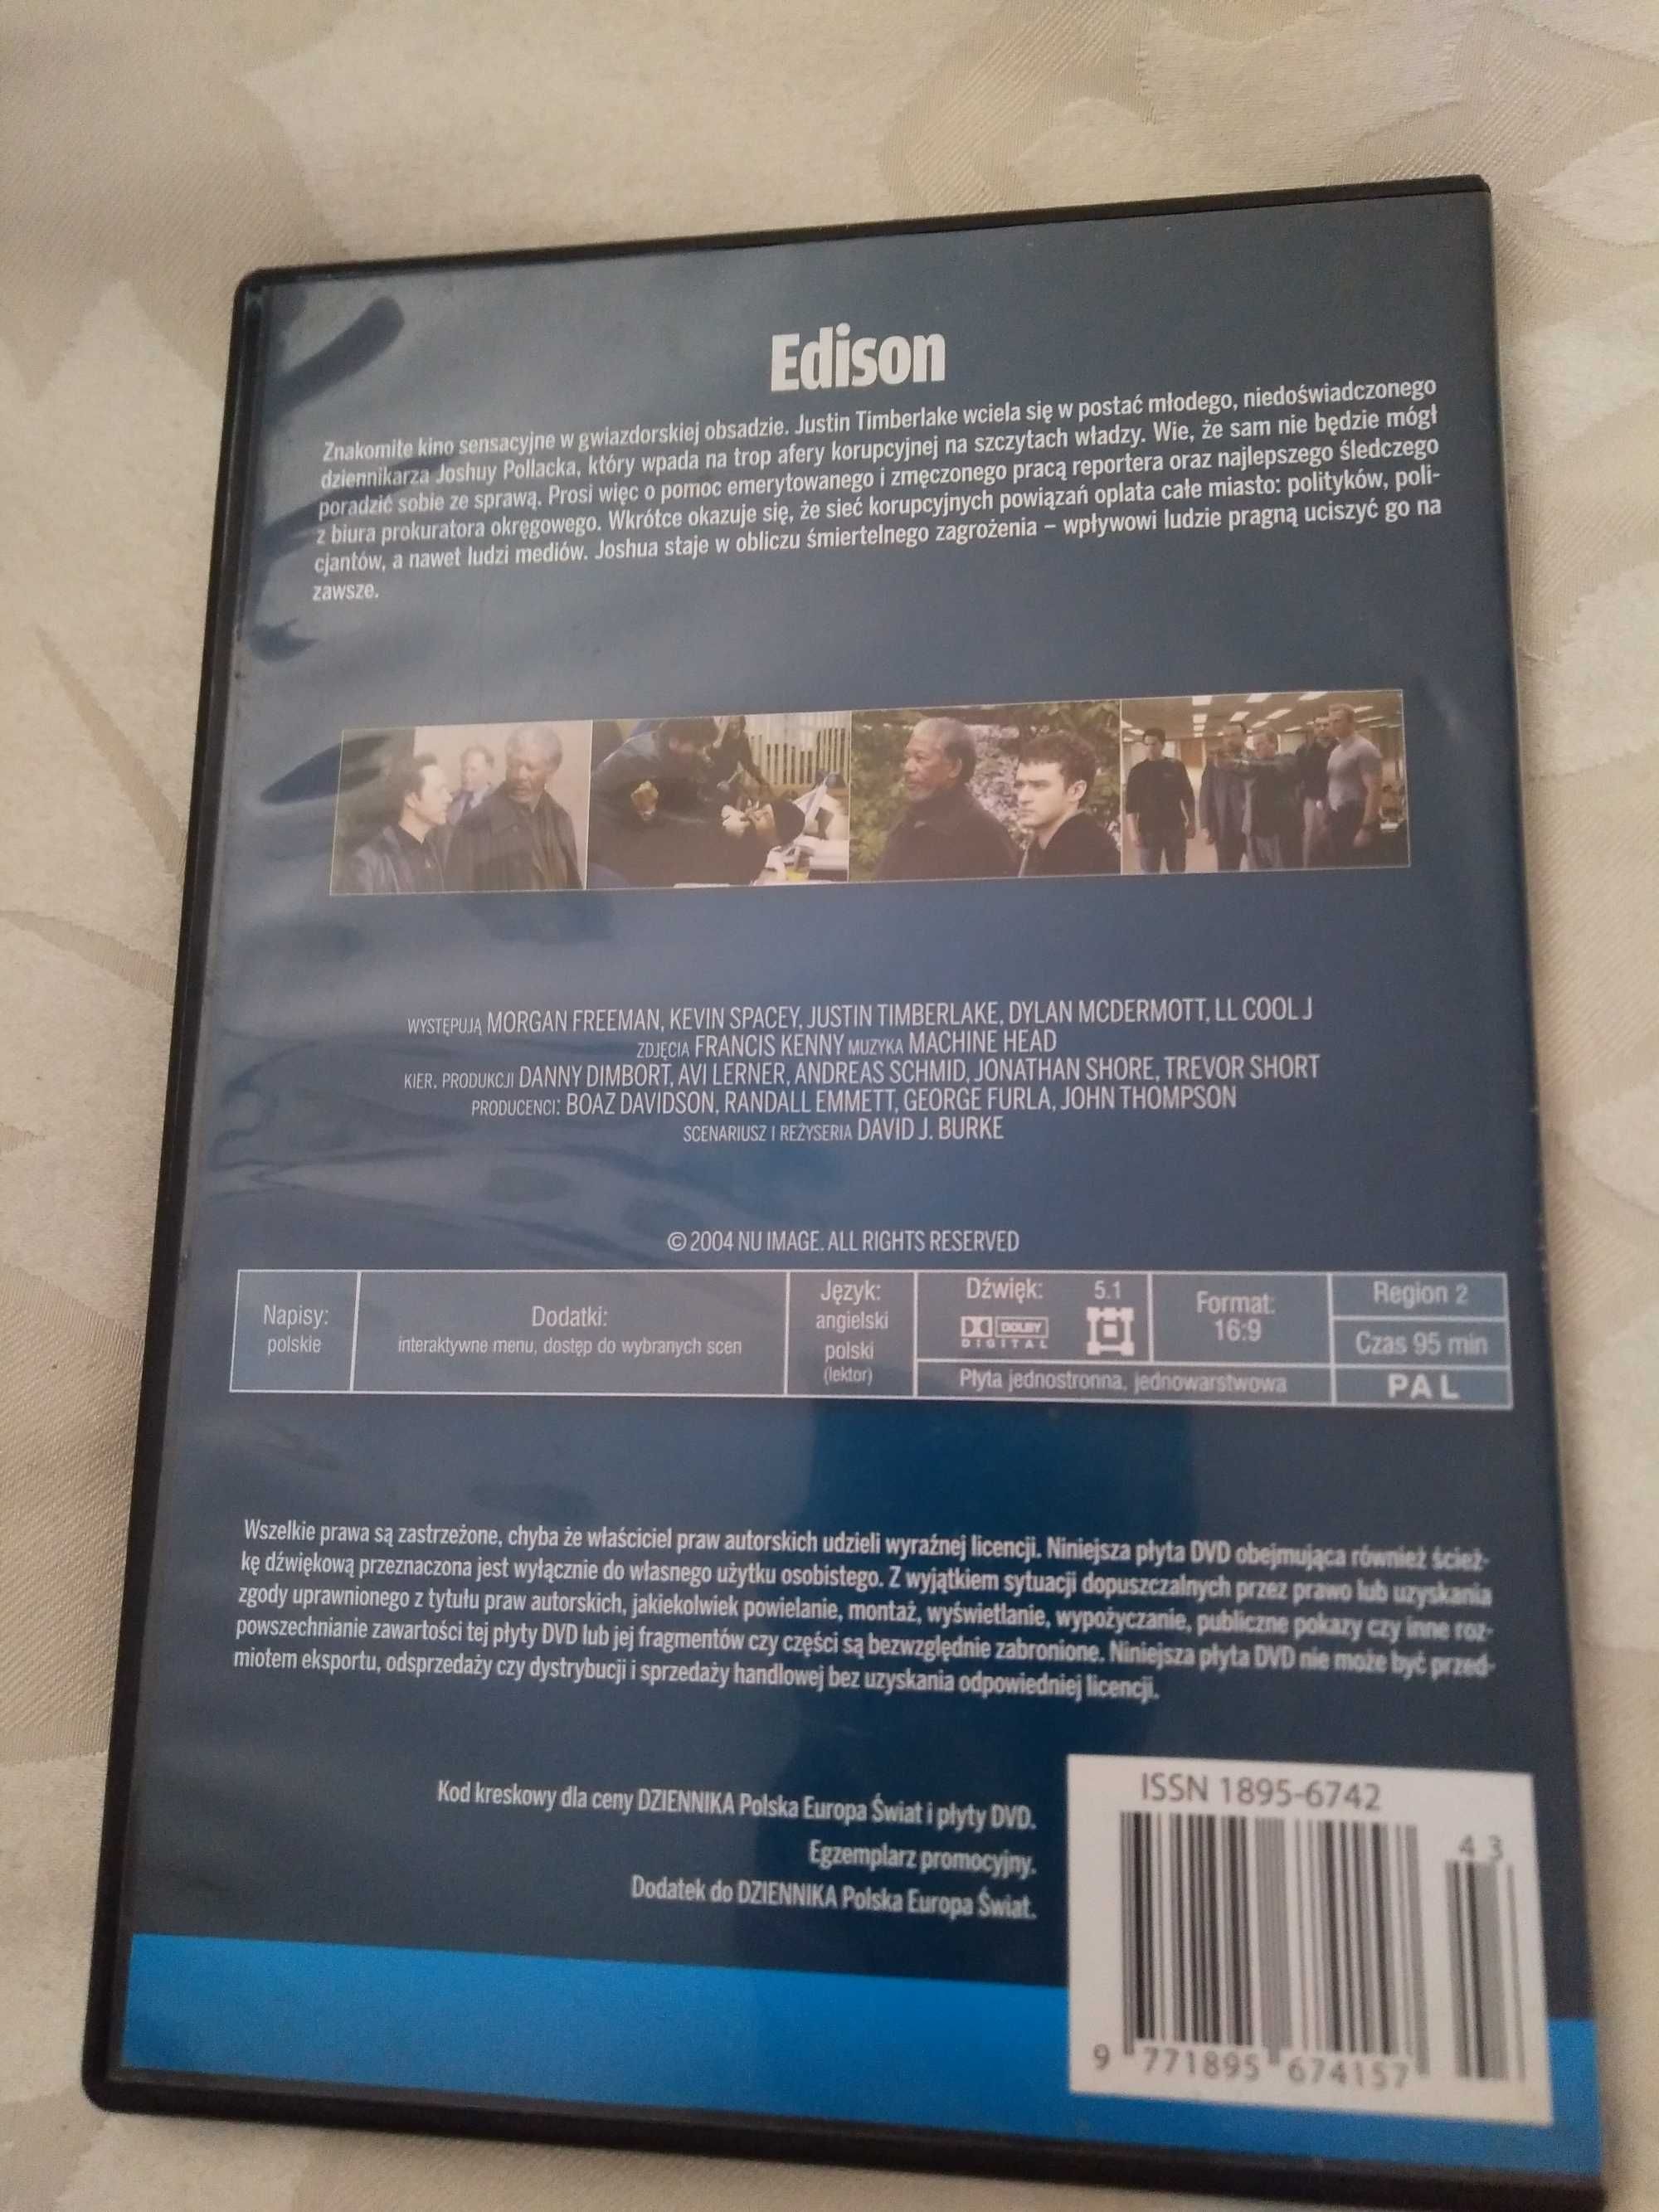 Edison film DVD płyta filmoteka dziennika seanse pod napięciem